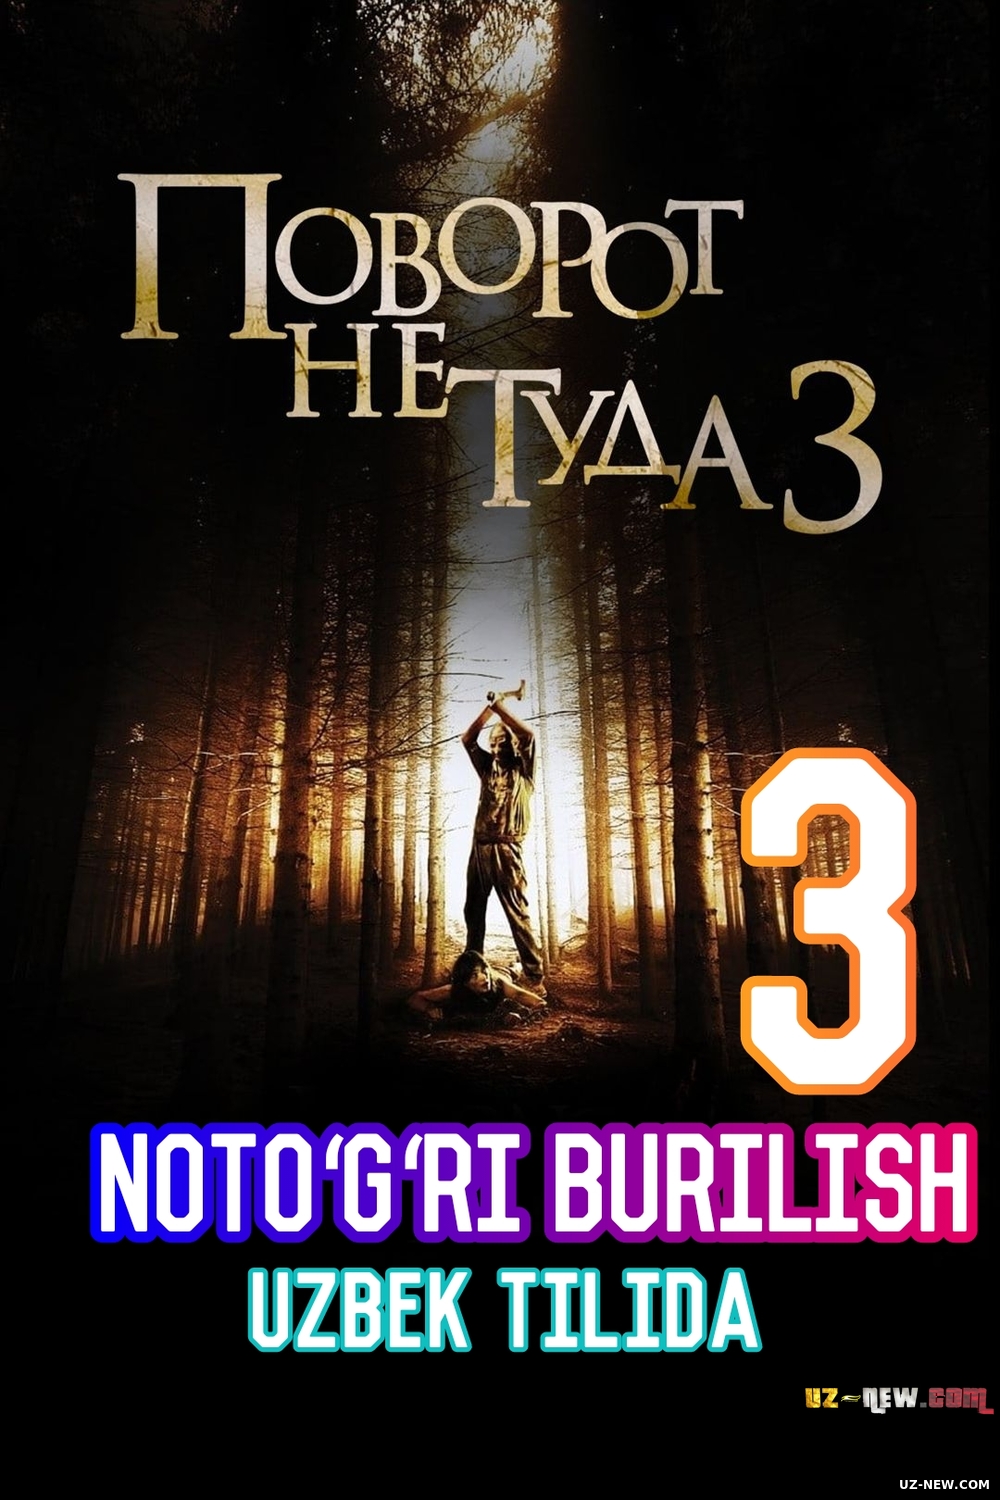 Notogri Burilish:3 / Поворот не туда 3 (2009) (Uzbek tilida) ujas kattalar uchun